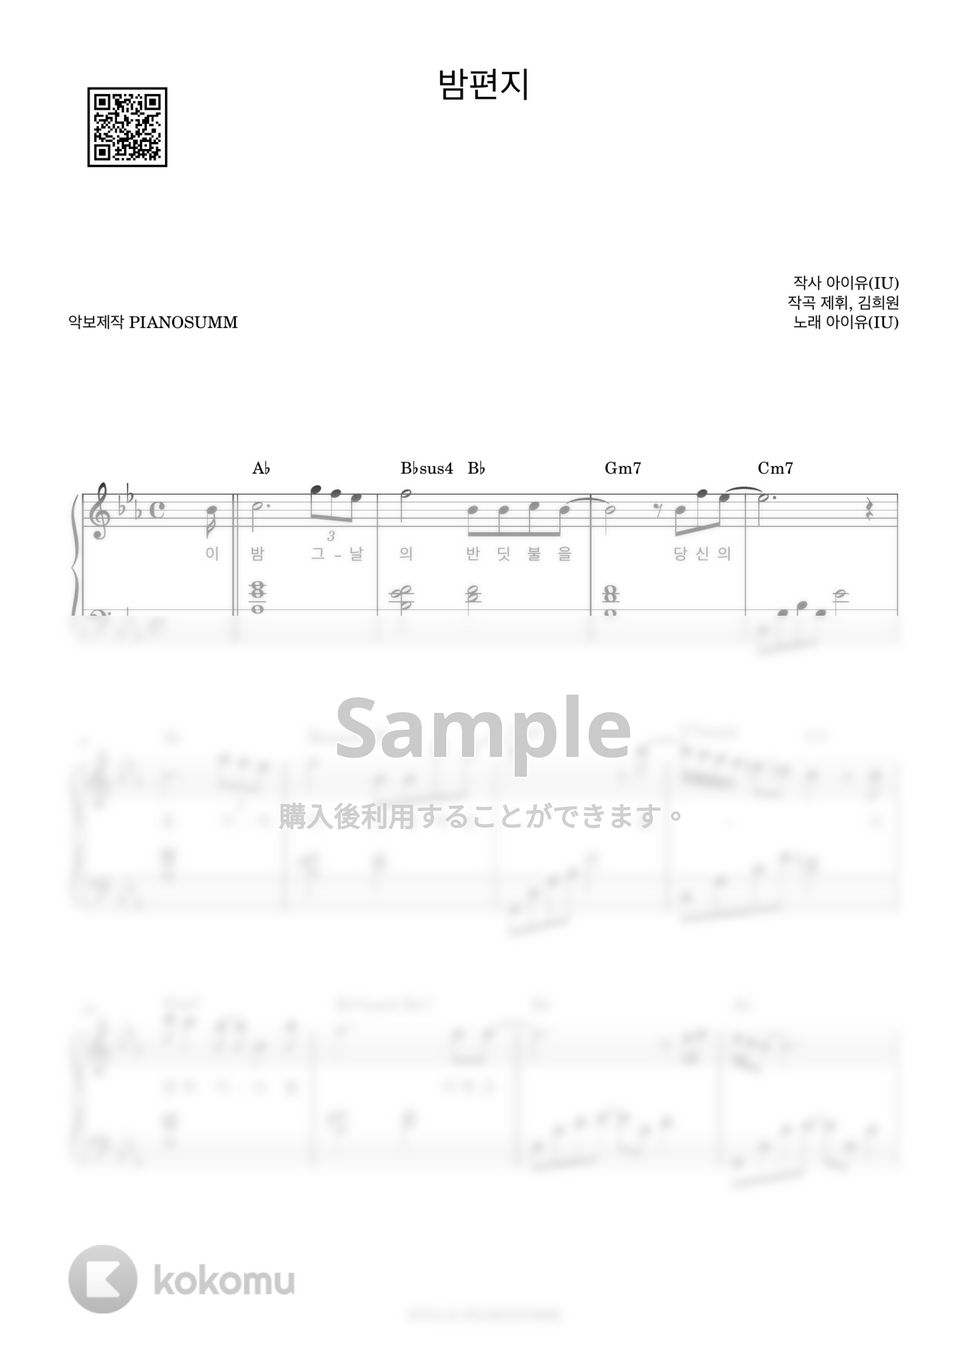 아이유(IU) - 밤편지 (Includes Ckey) by PIANOSUMM